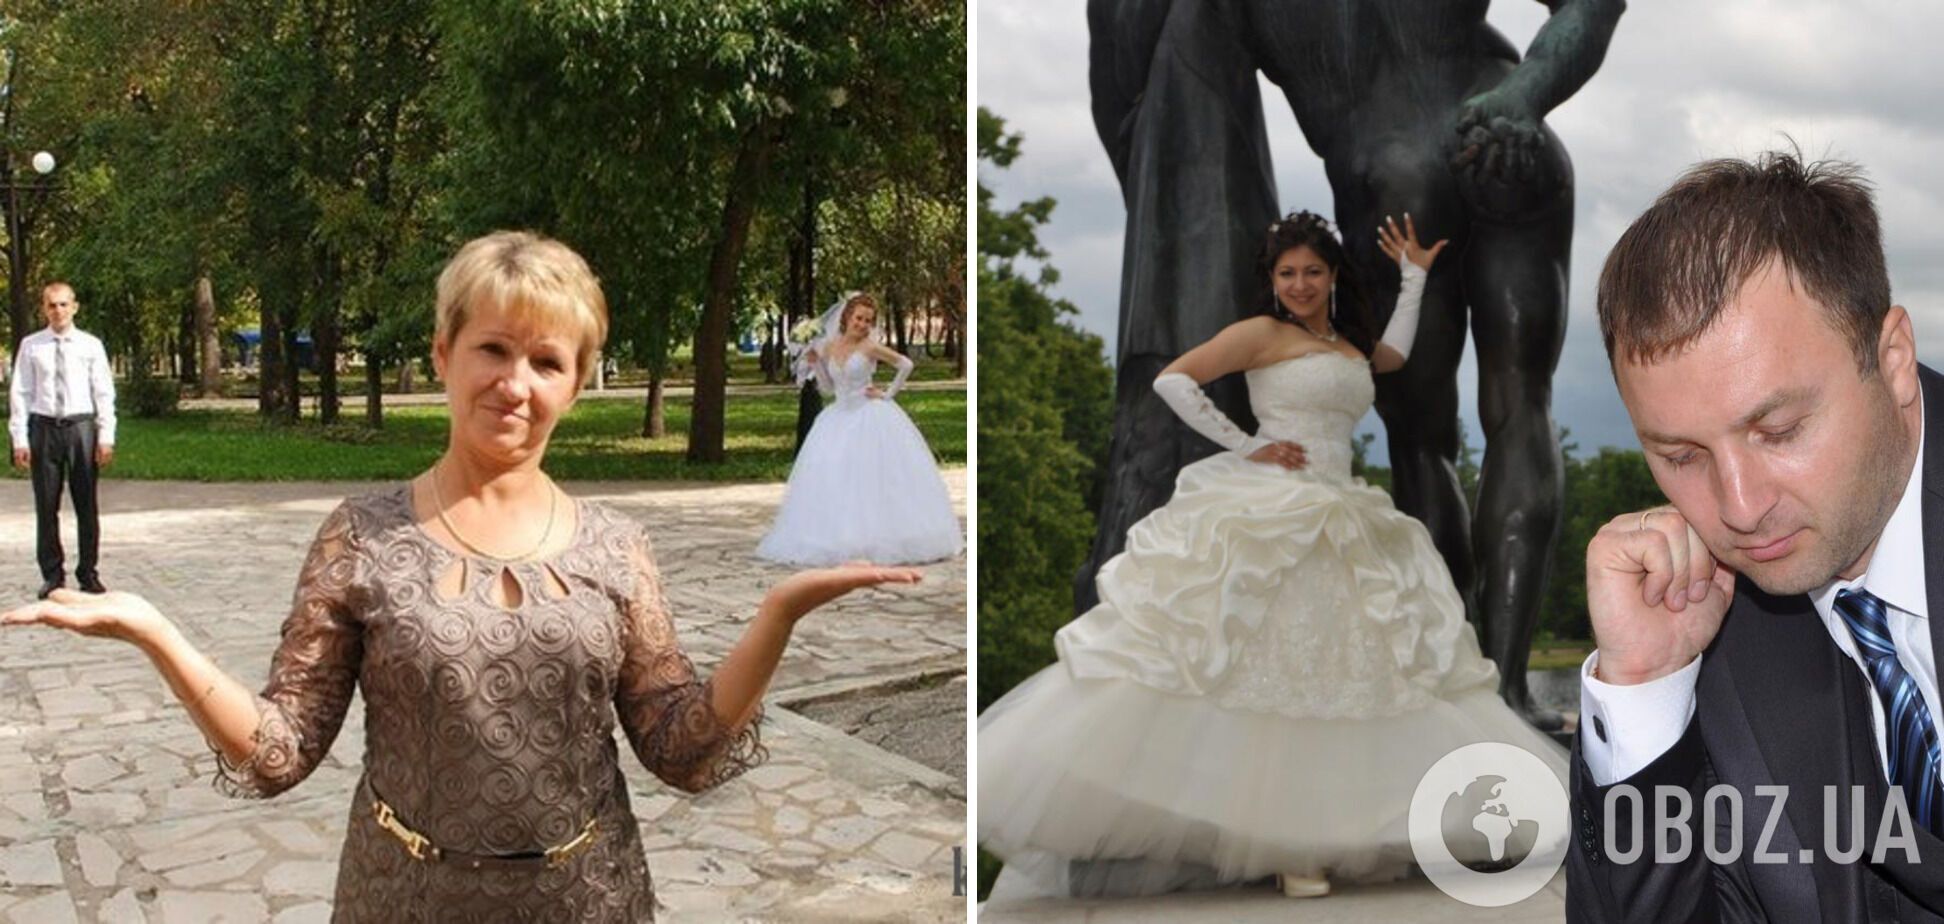 Весільні фотографії - найважливіші пам'ятки з дня одруження